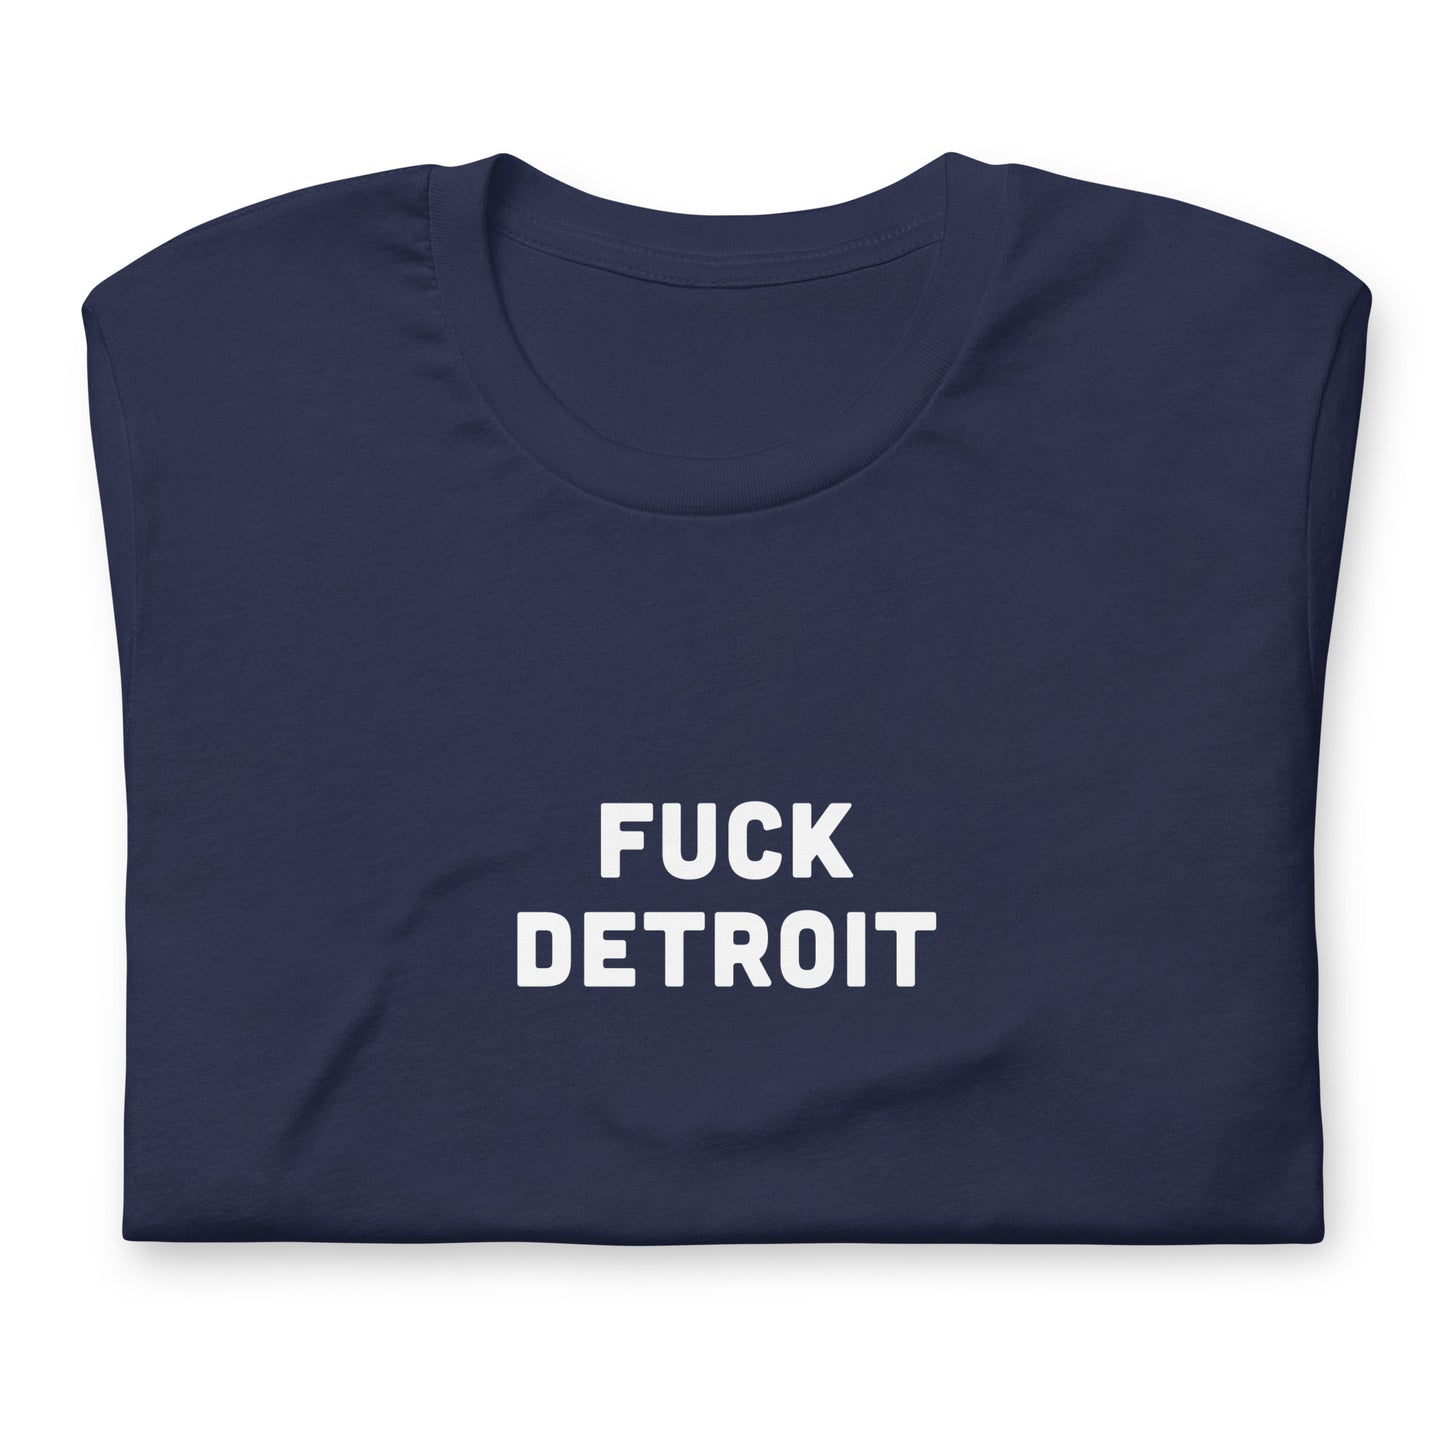 Fuck Detroit T-Shirt Size M Color Black